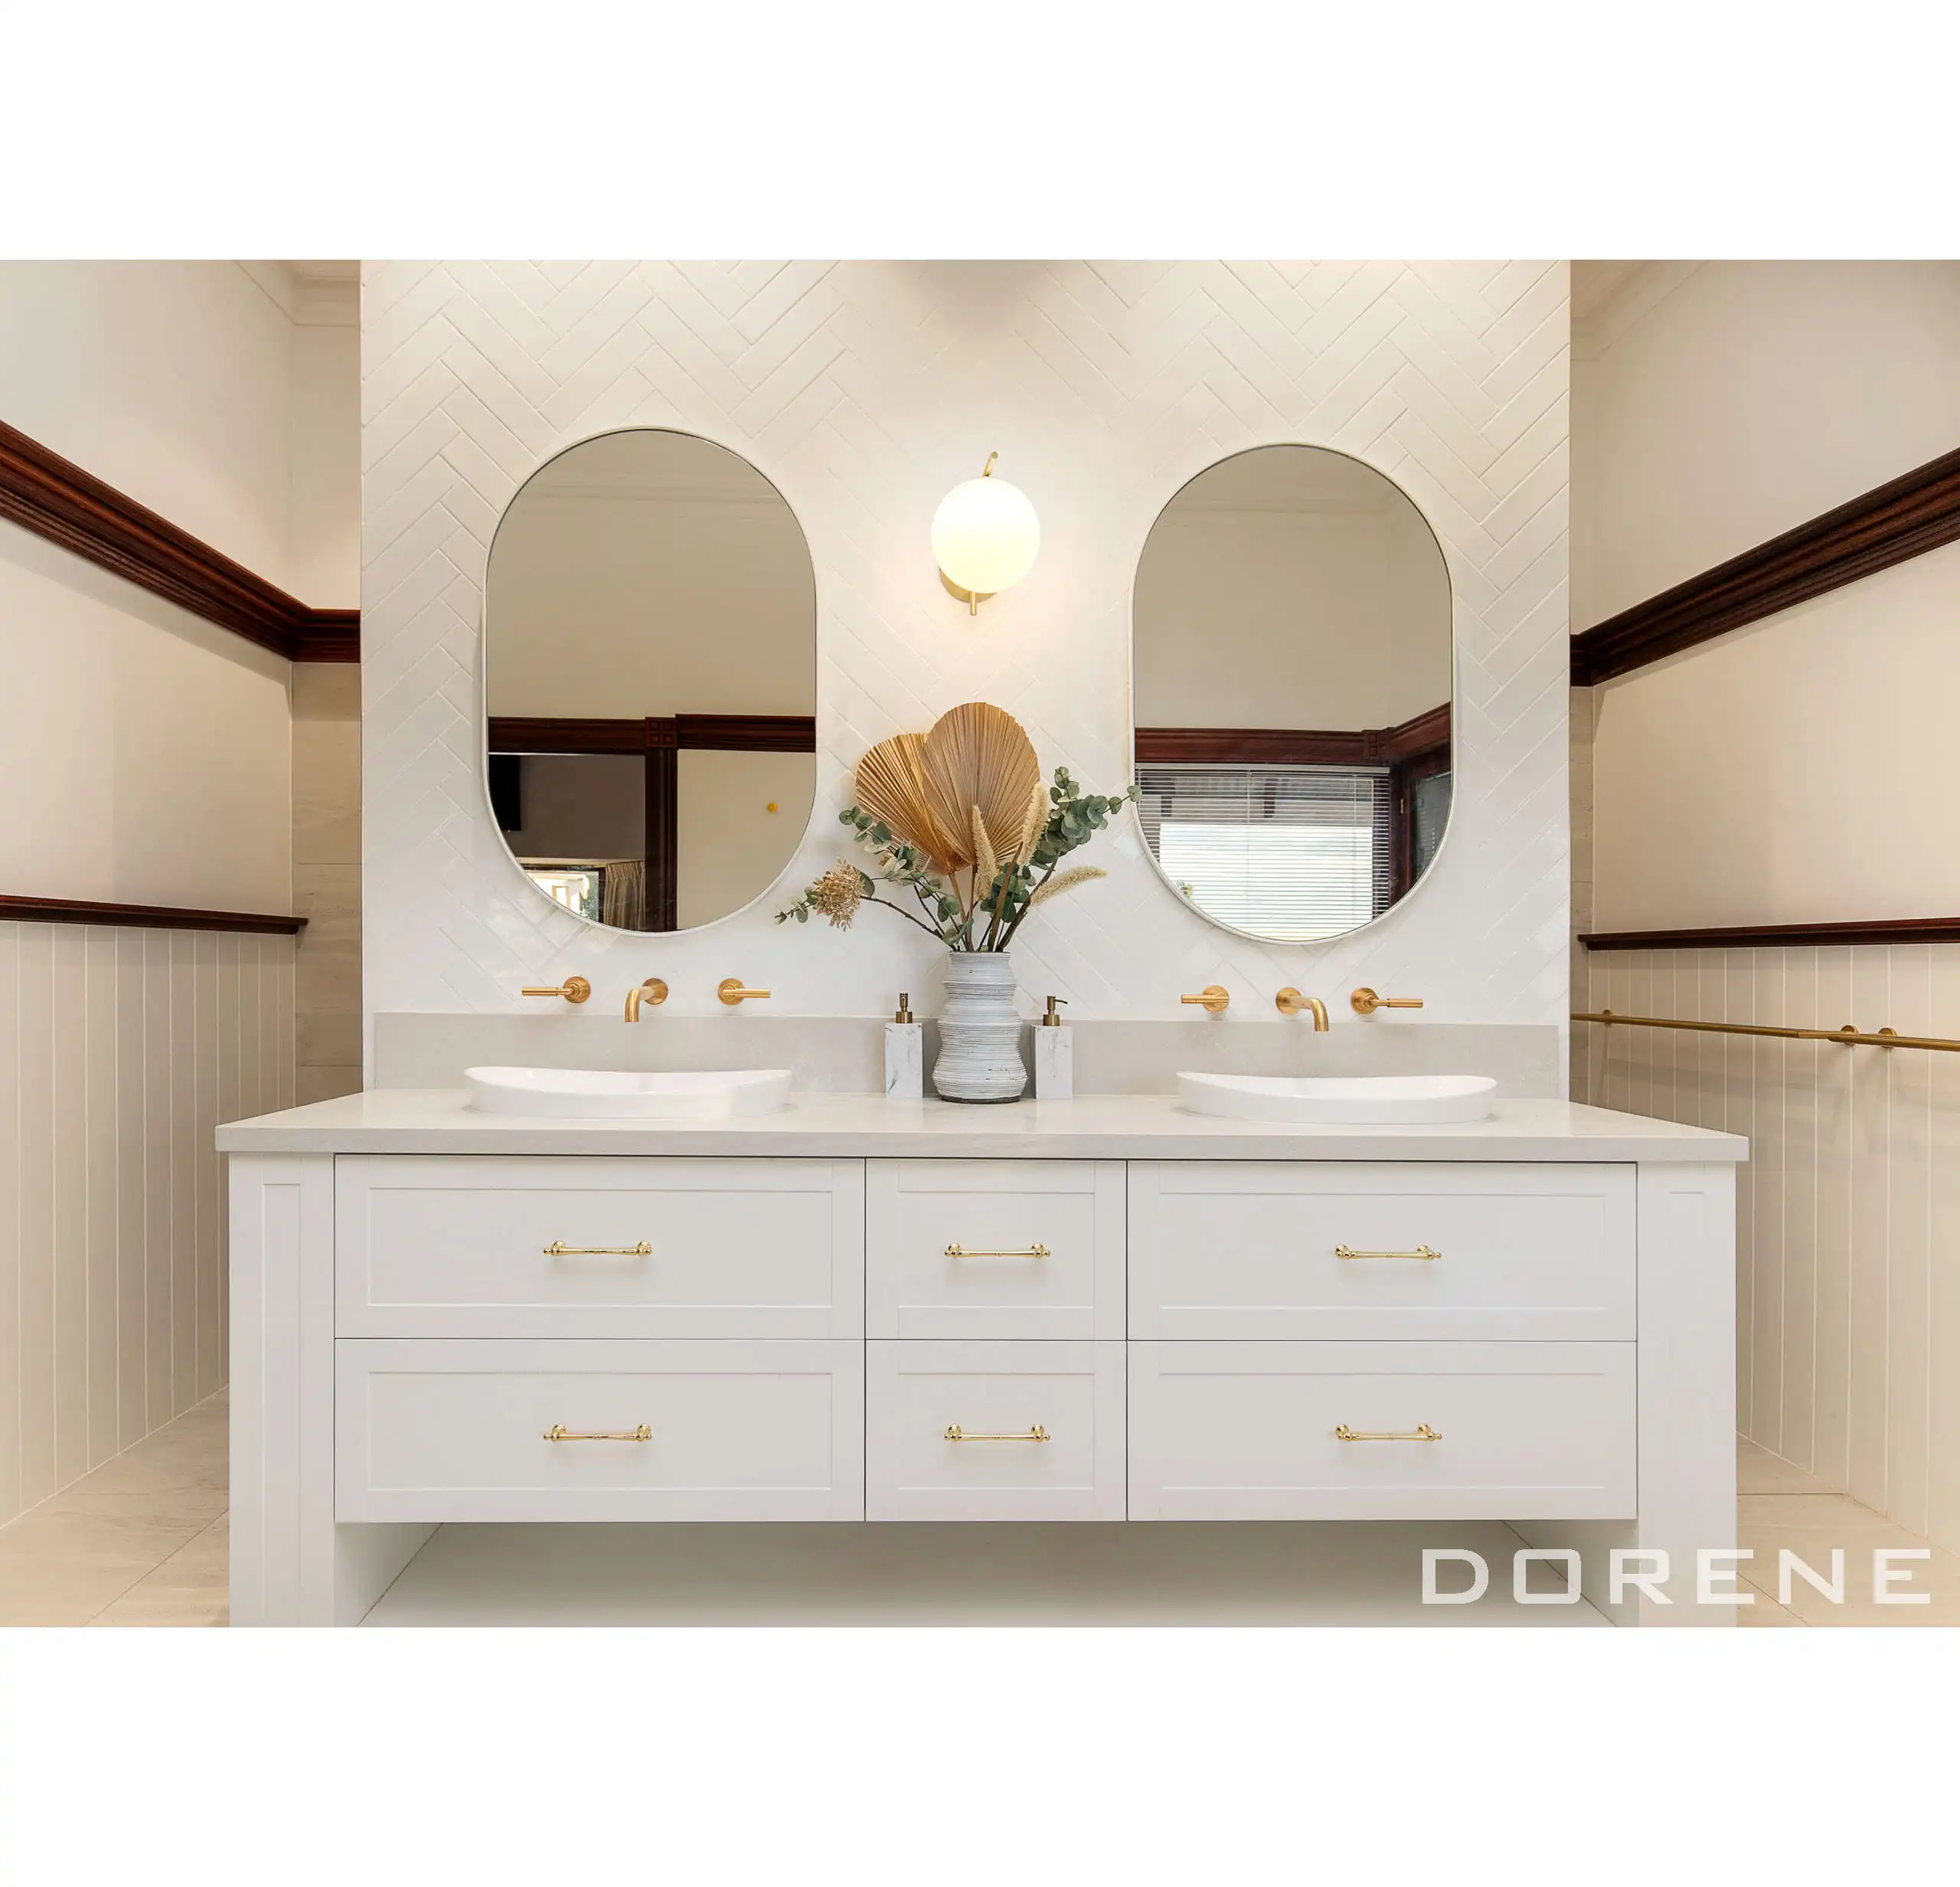 2024 Dorene, lavabo doble de Color blanco de gama alta, muebles de baño, agitador, puerta, tocador de baño